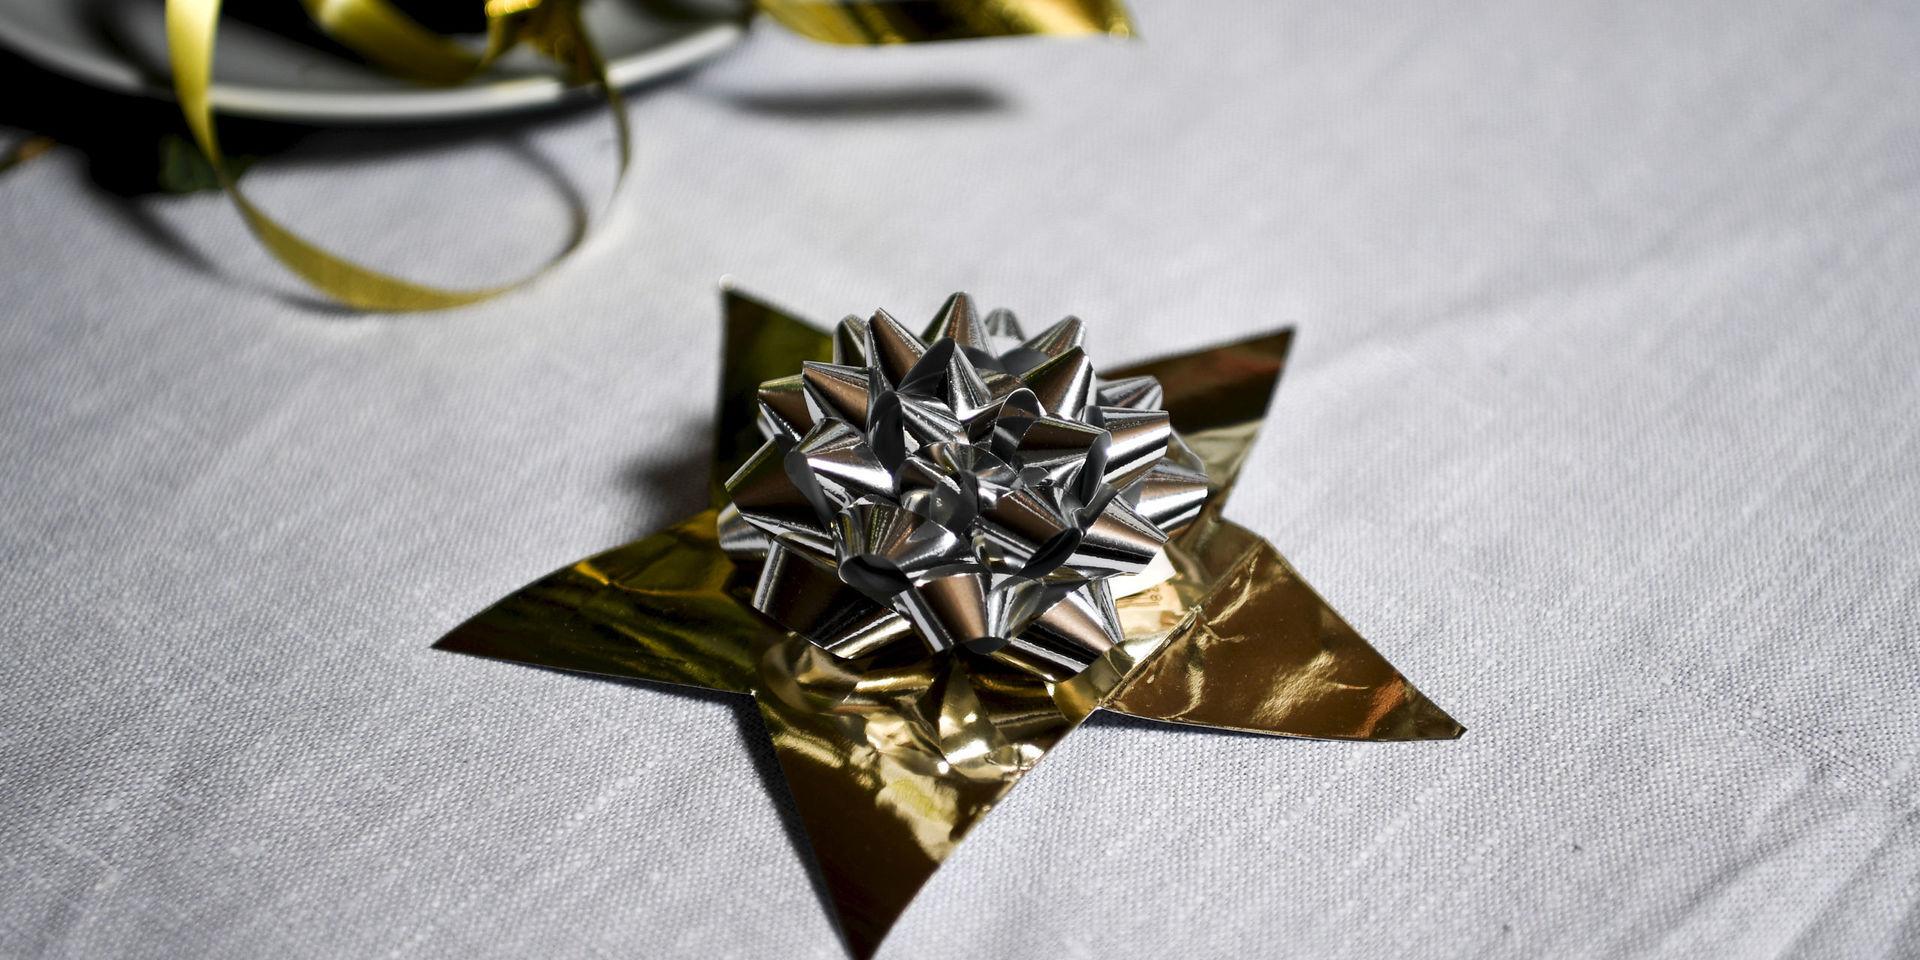 Guld och silver passar på nyårsafton. Presentkartongen från julafton har förvandlats till en stjärna och paketrosen återanvänds som dekoration.